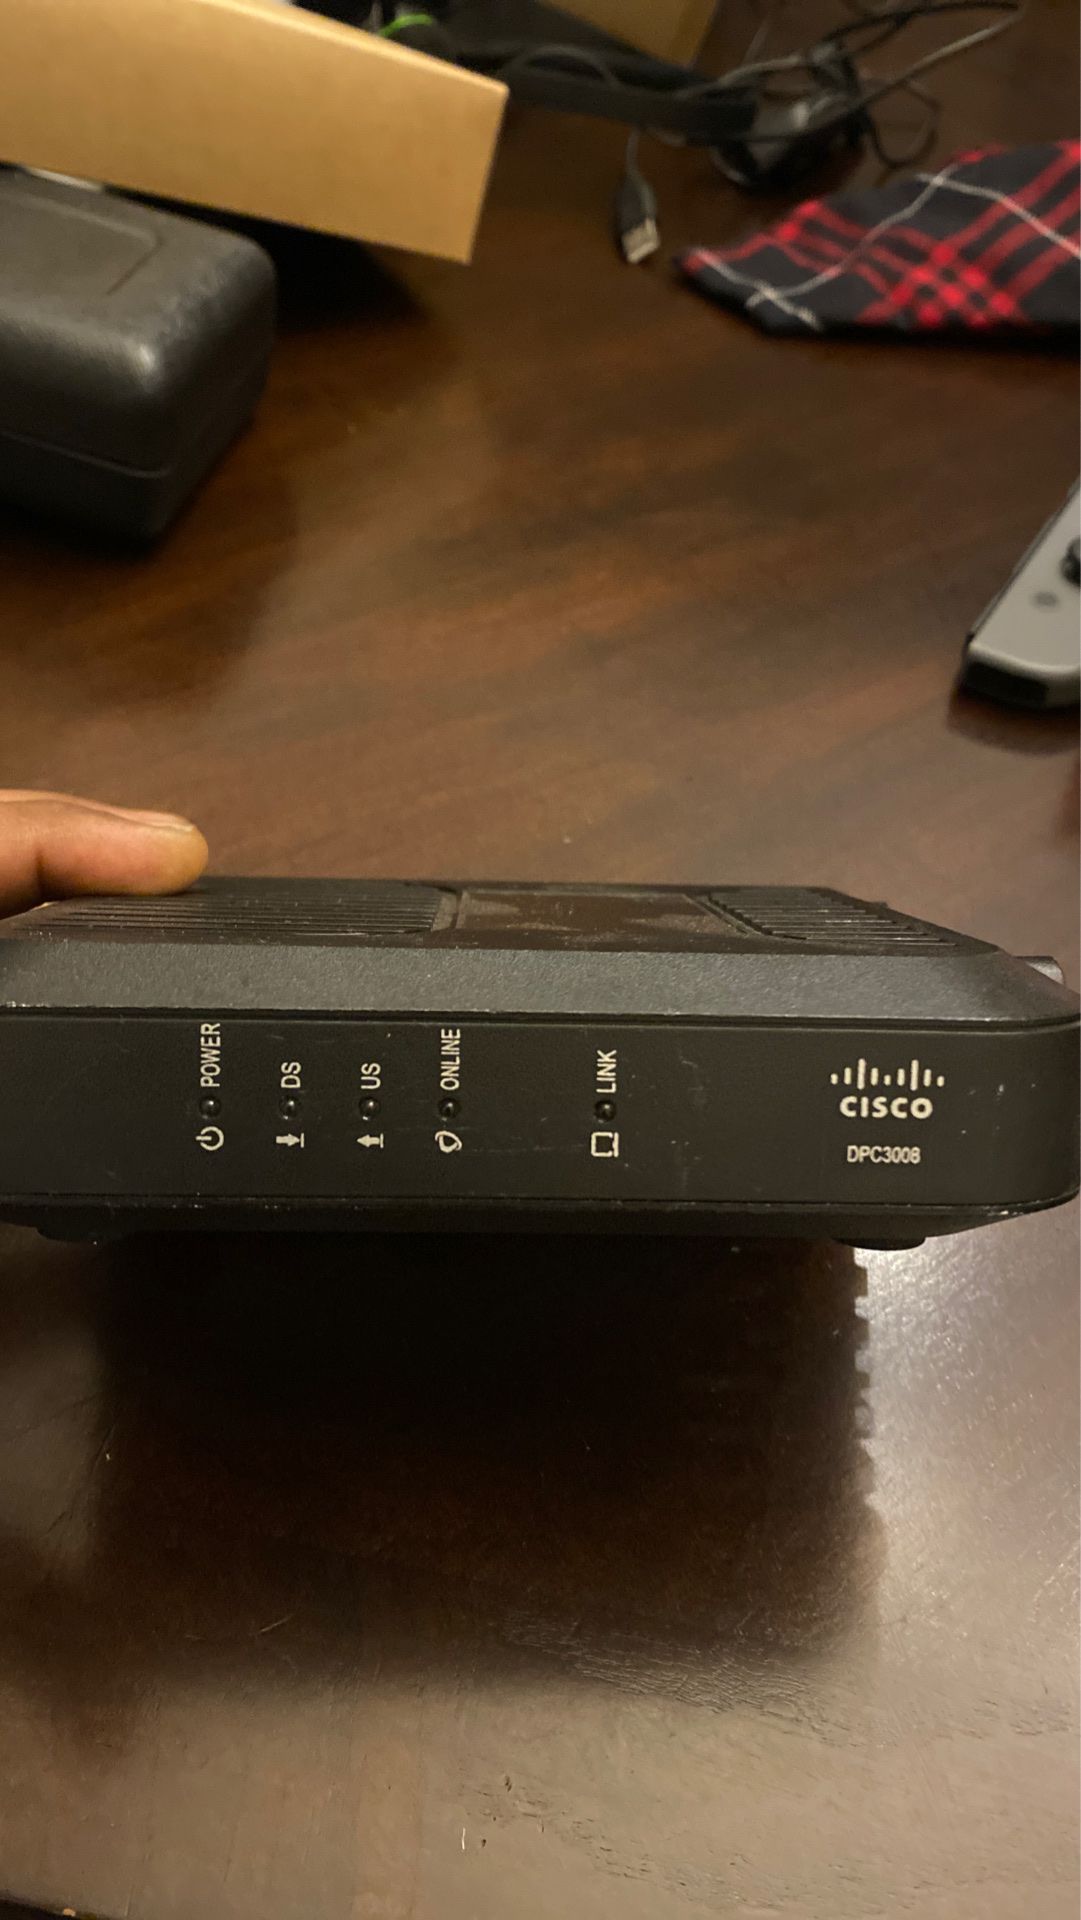 Cisco cable modem DPC3008